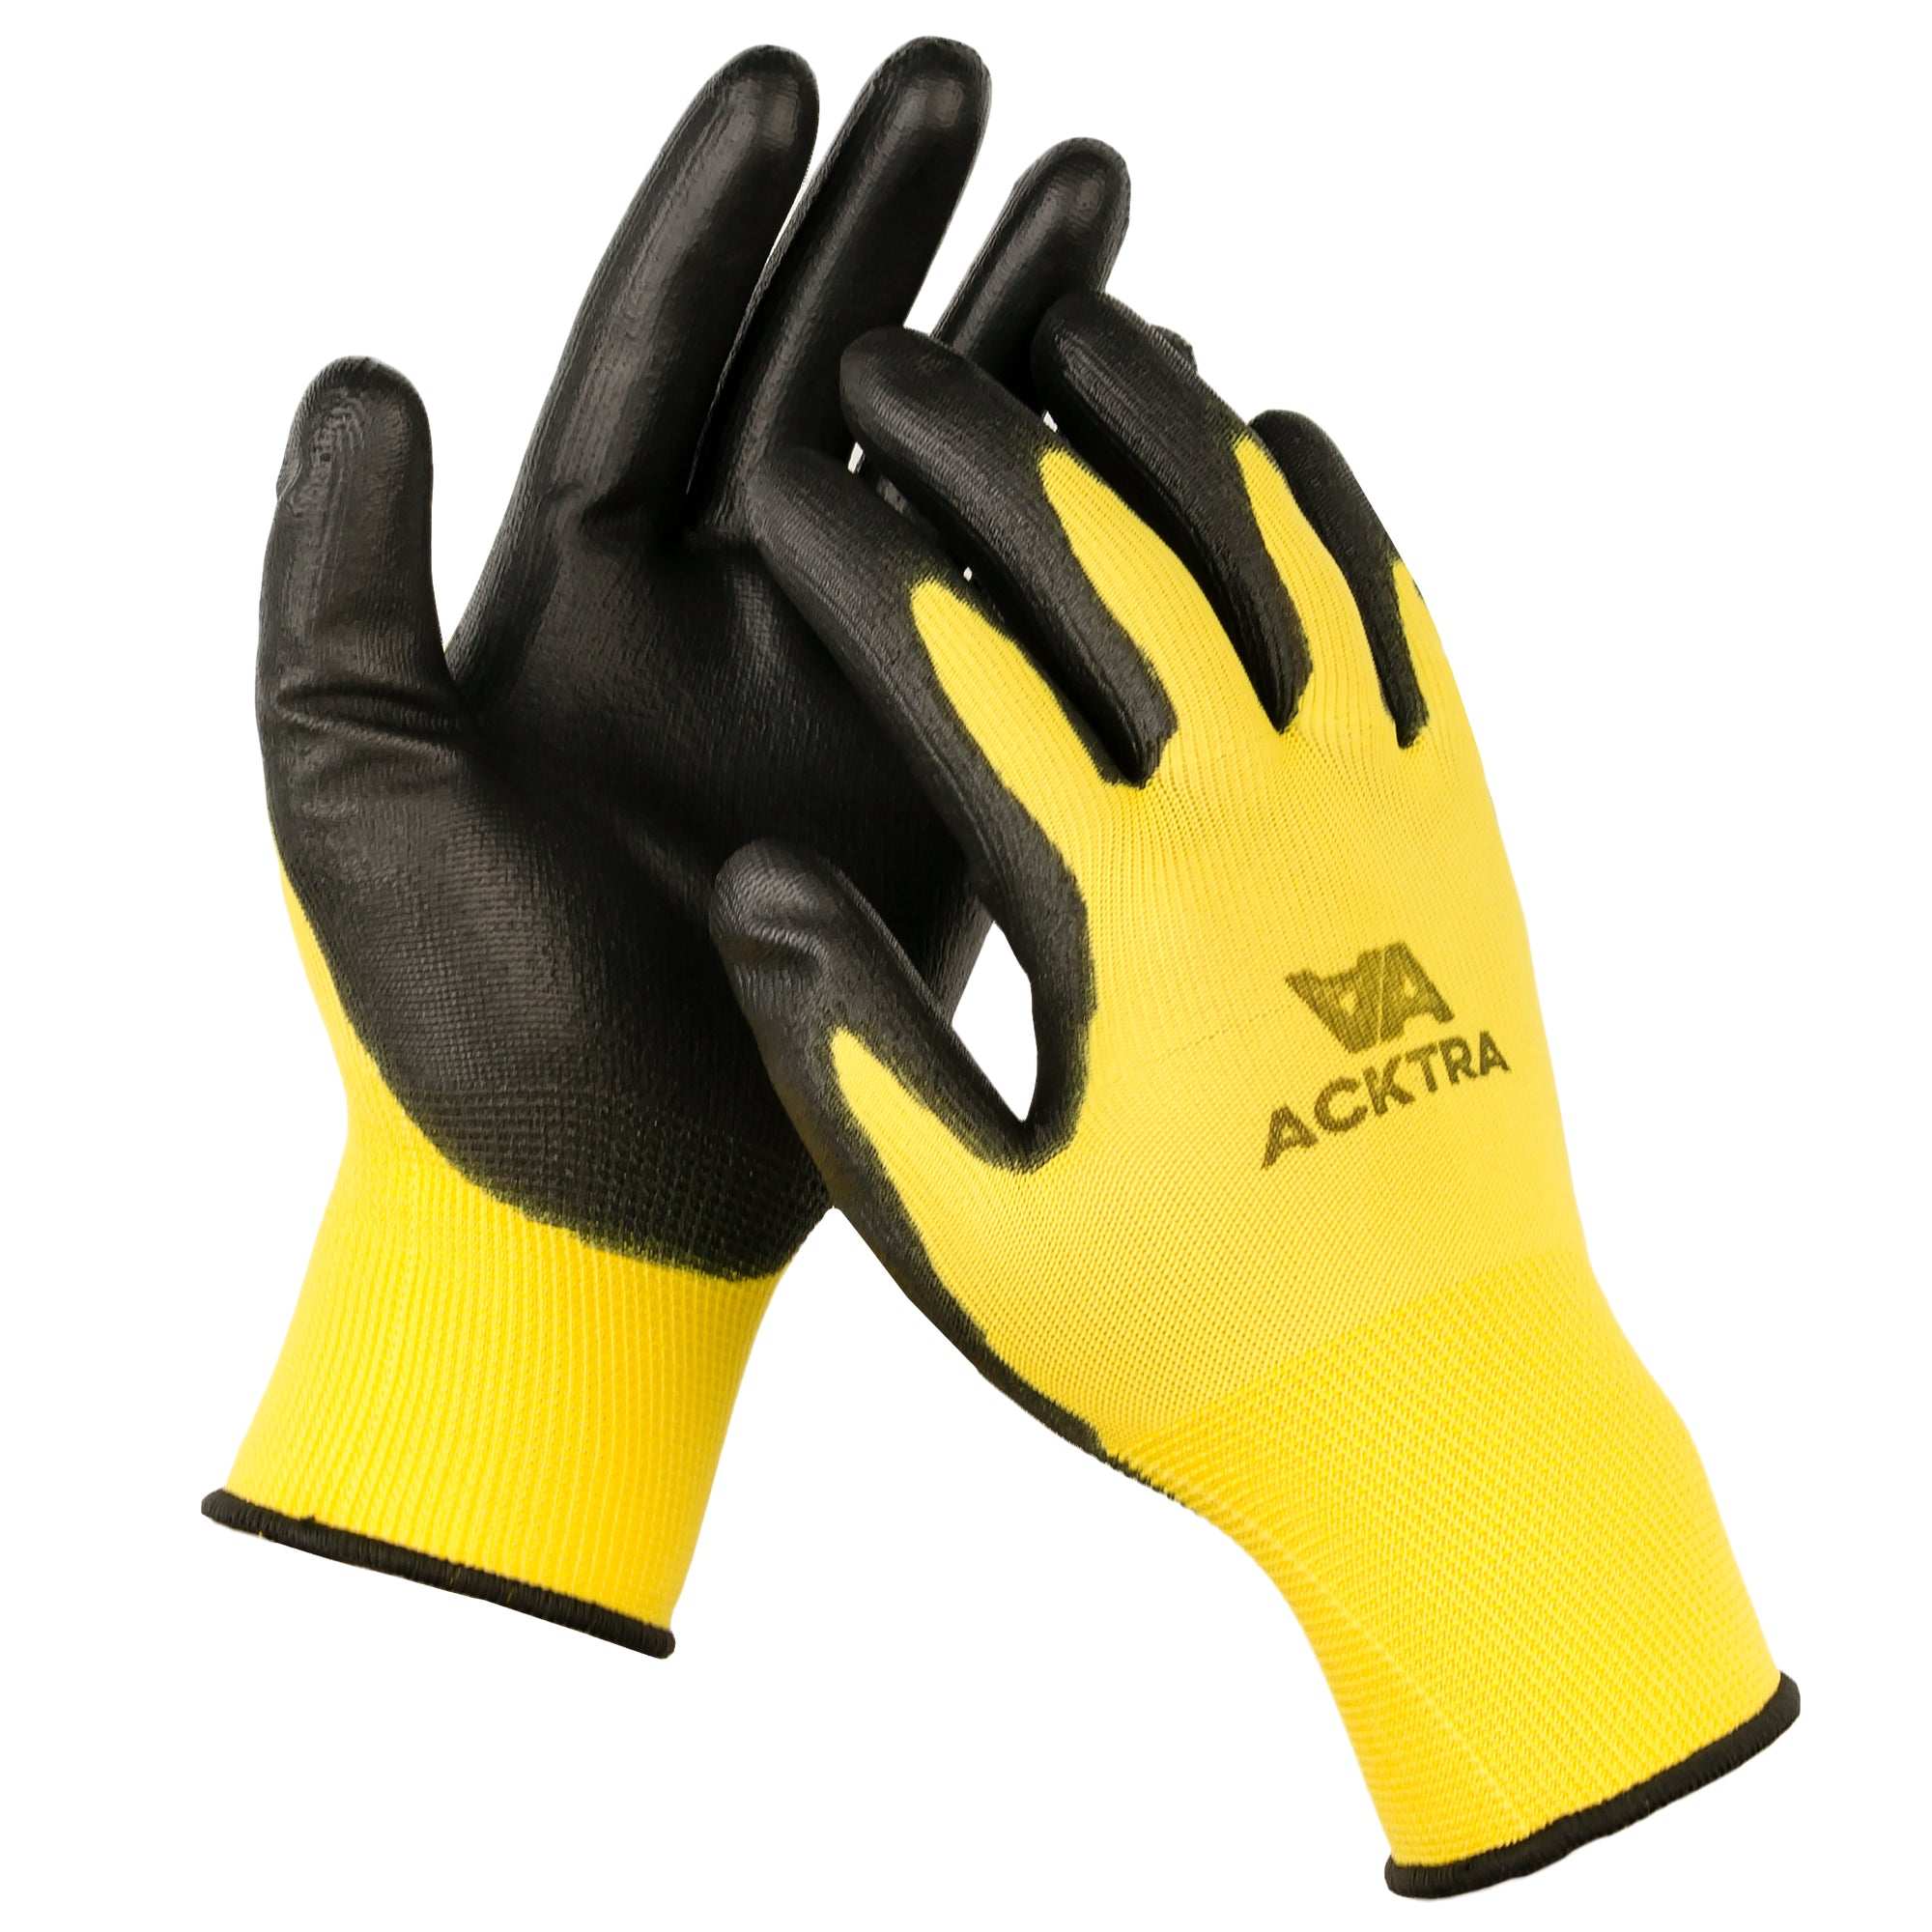 Polyurethane coated work gloves, 2021-06-27